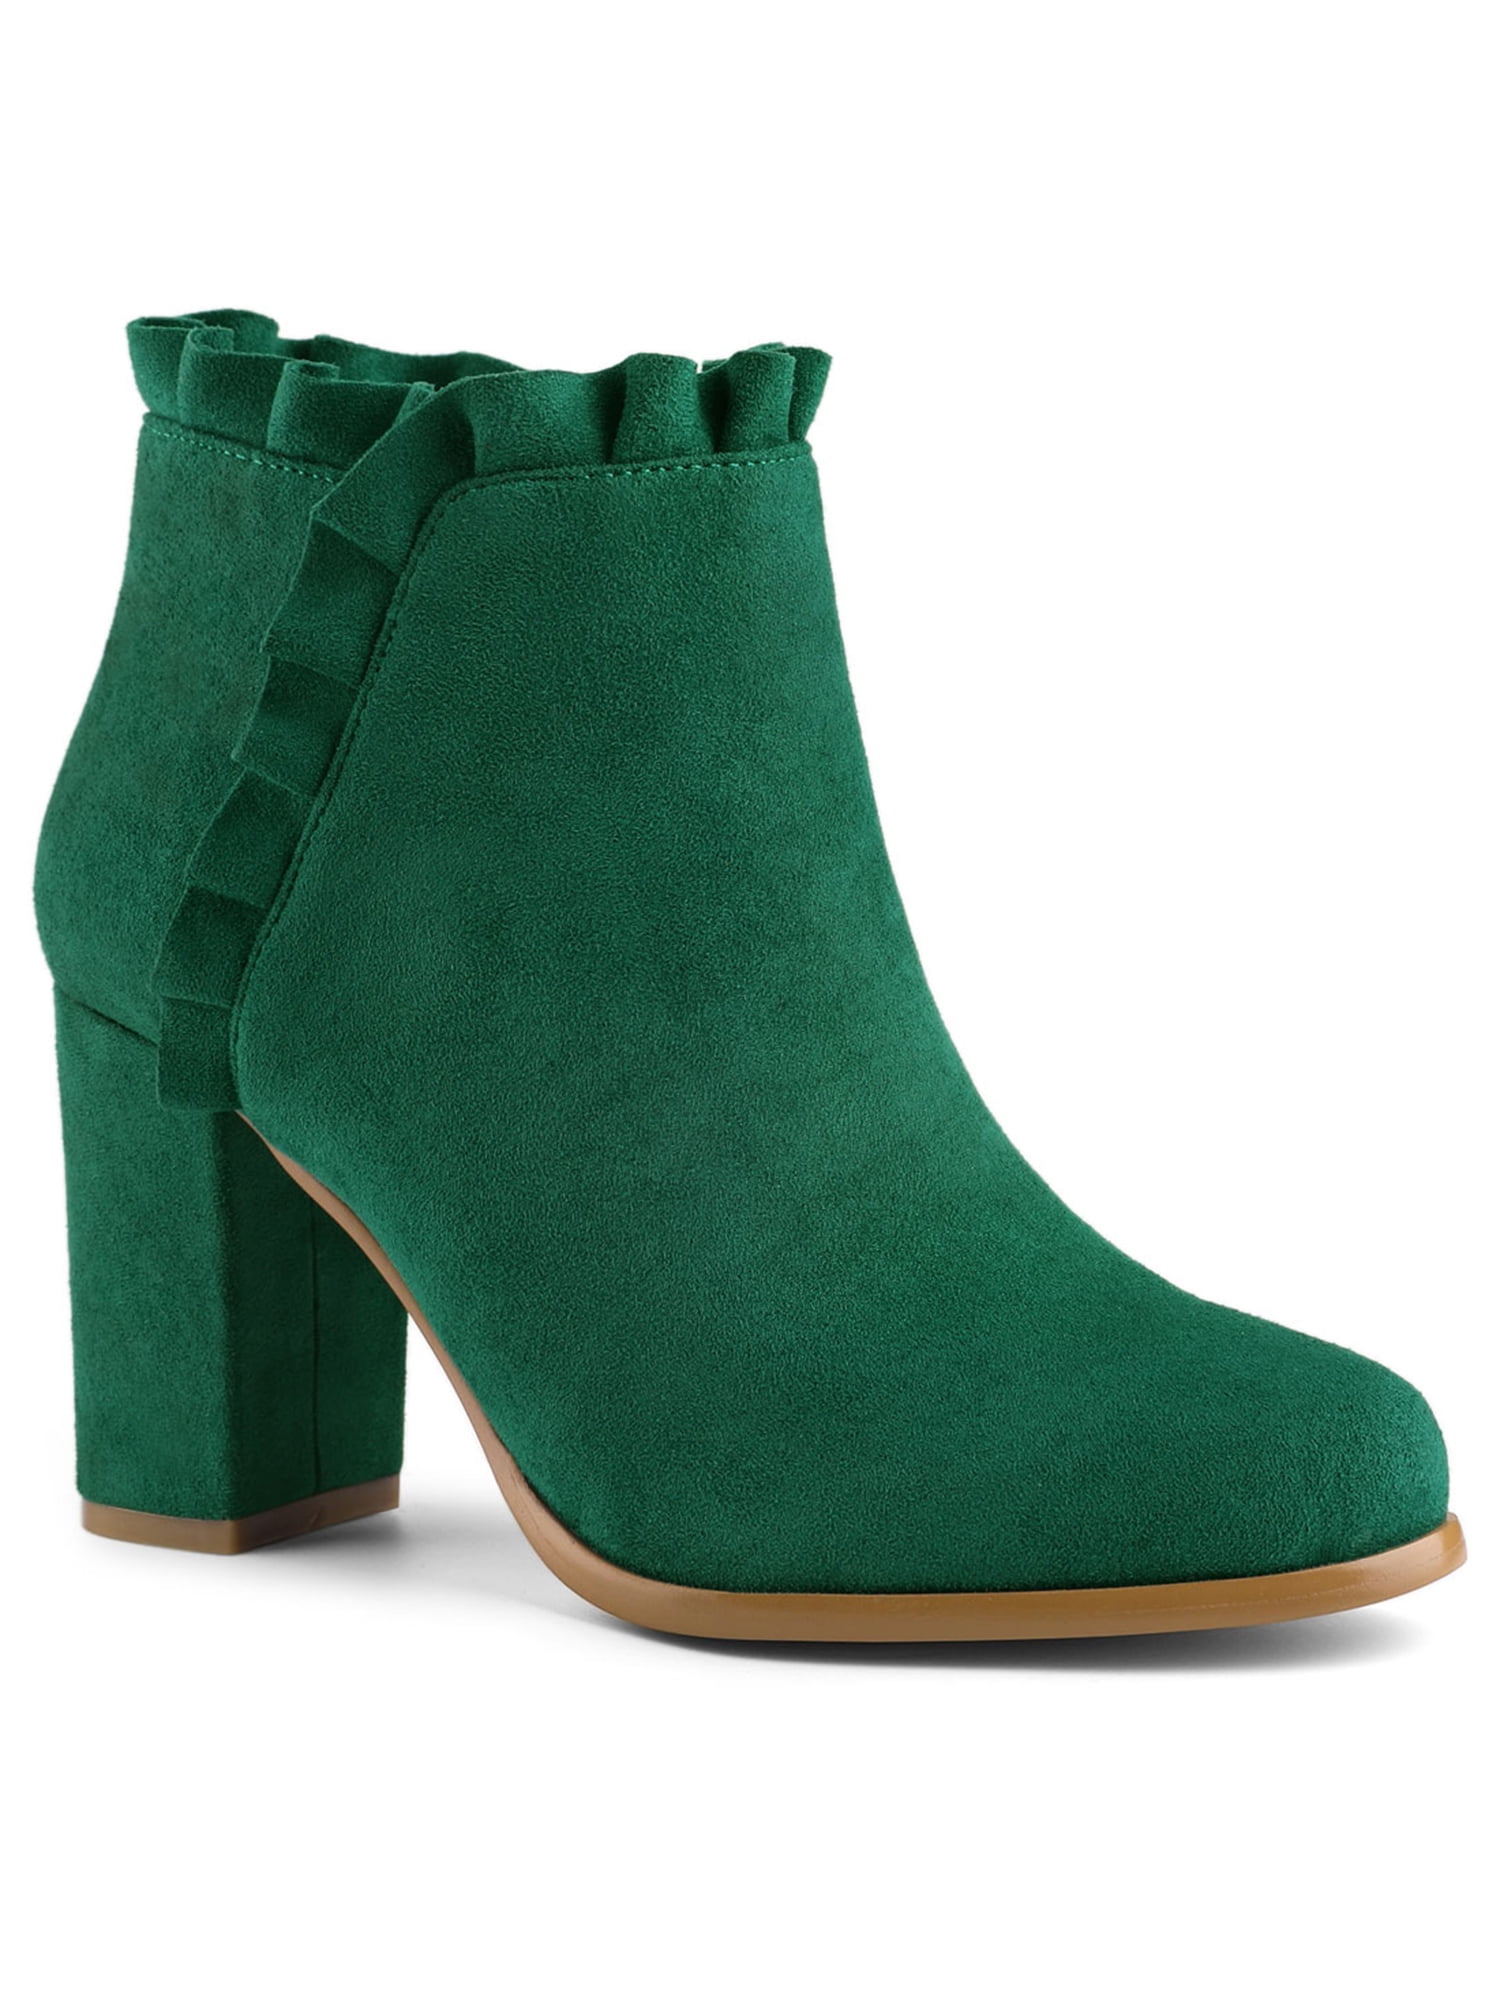 emerald green boots womens